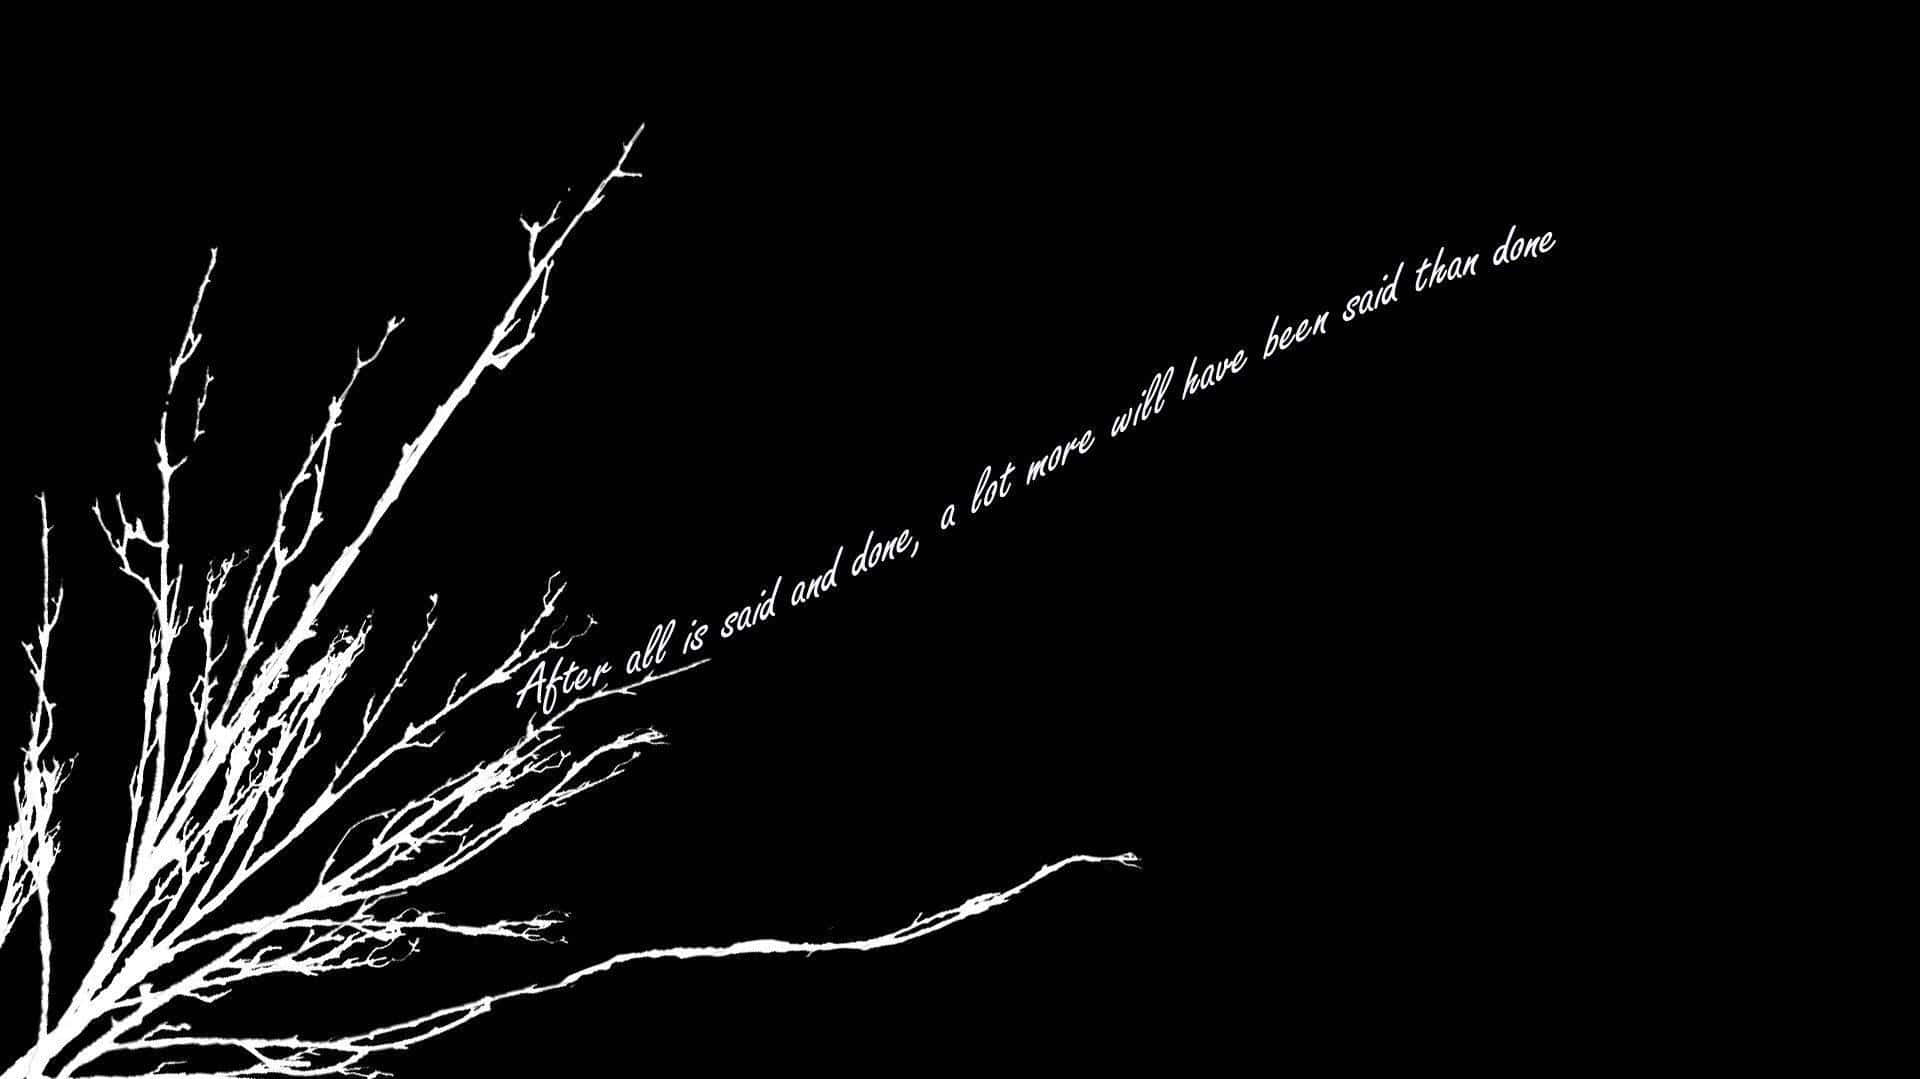 Dark Branches Profound Quote.jpg Wallpaper